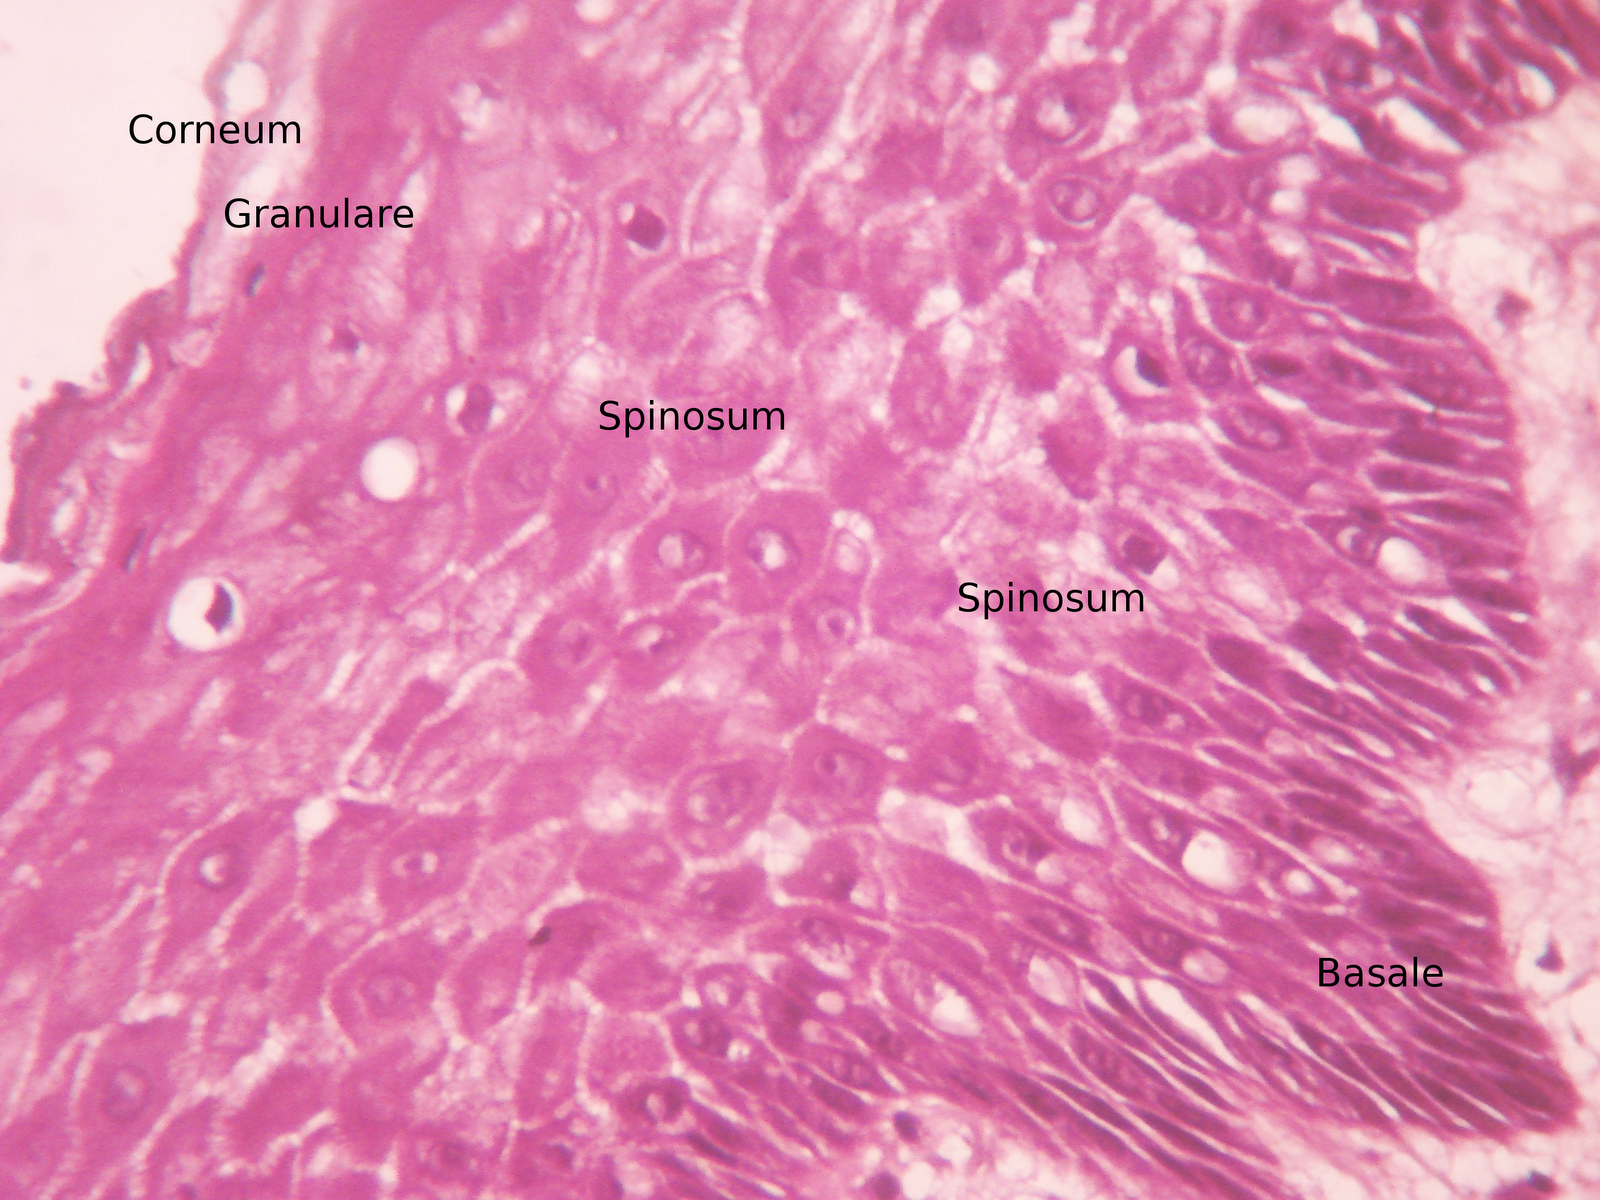 Stratified squamous epithelium